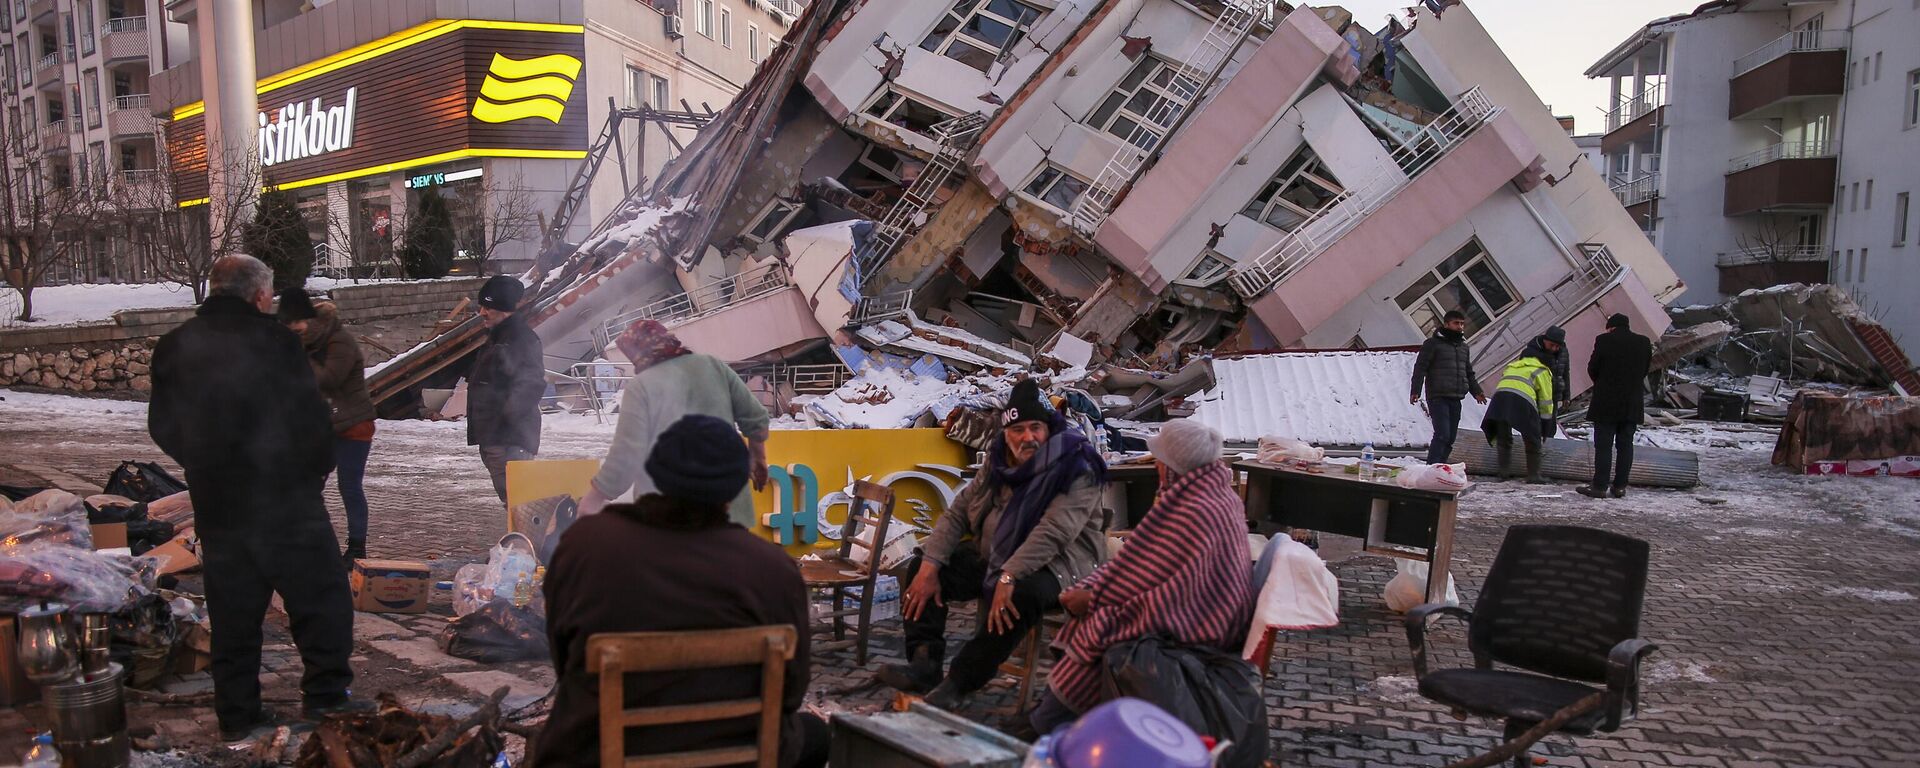 Разрушения в Гельбаши вследствие землетрясения в Турции  - Sputnik Mundo, 1920, 13.02.2023